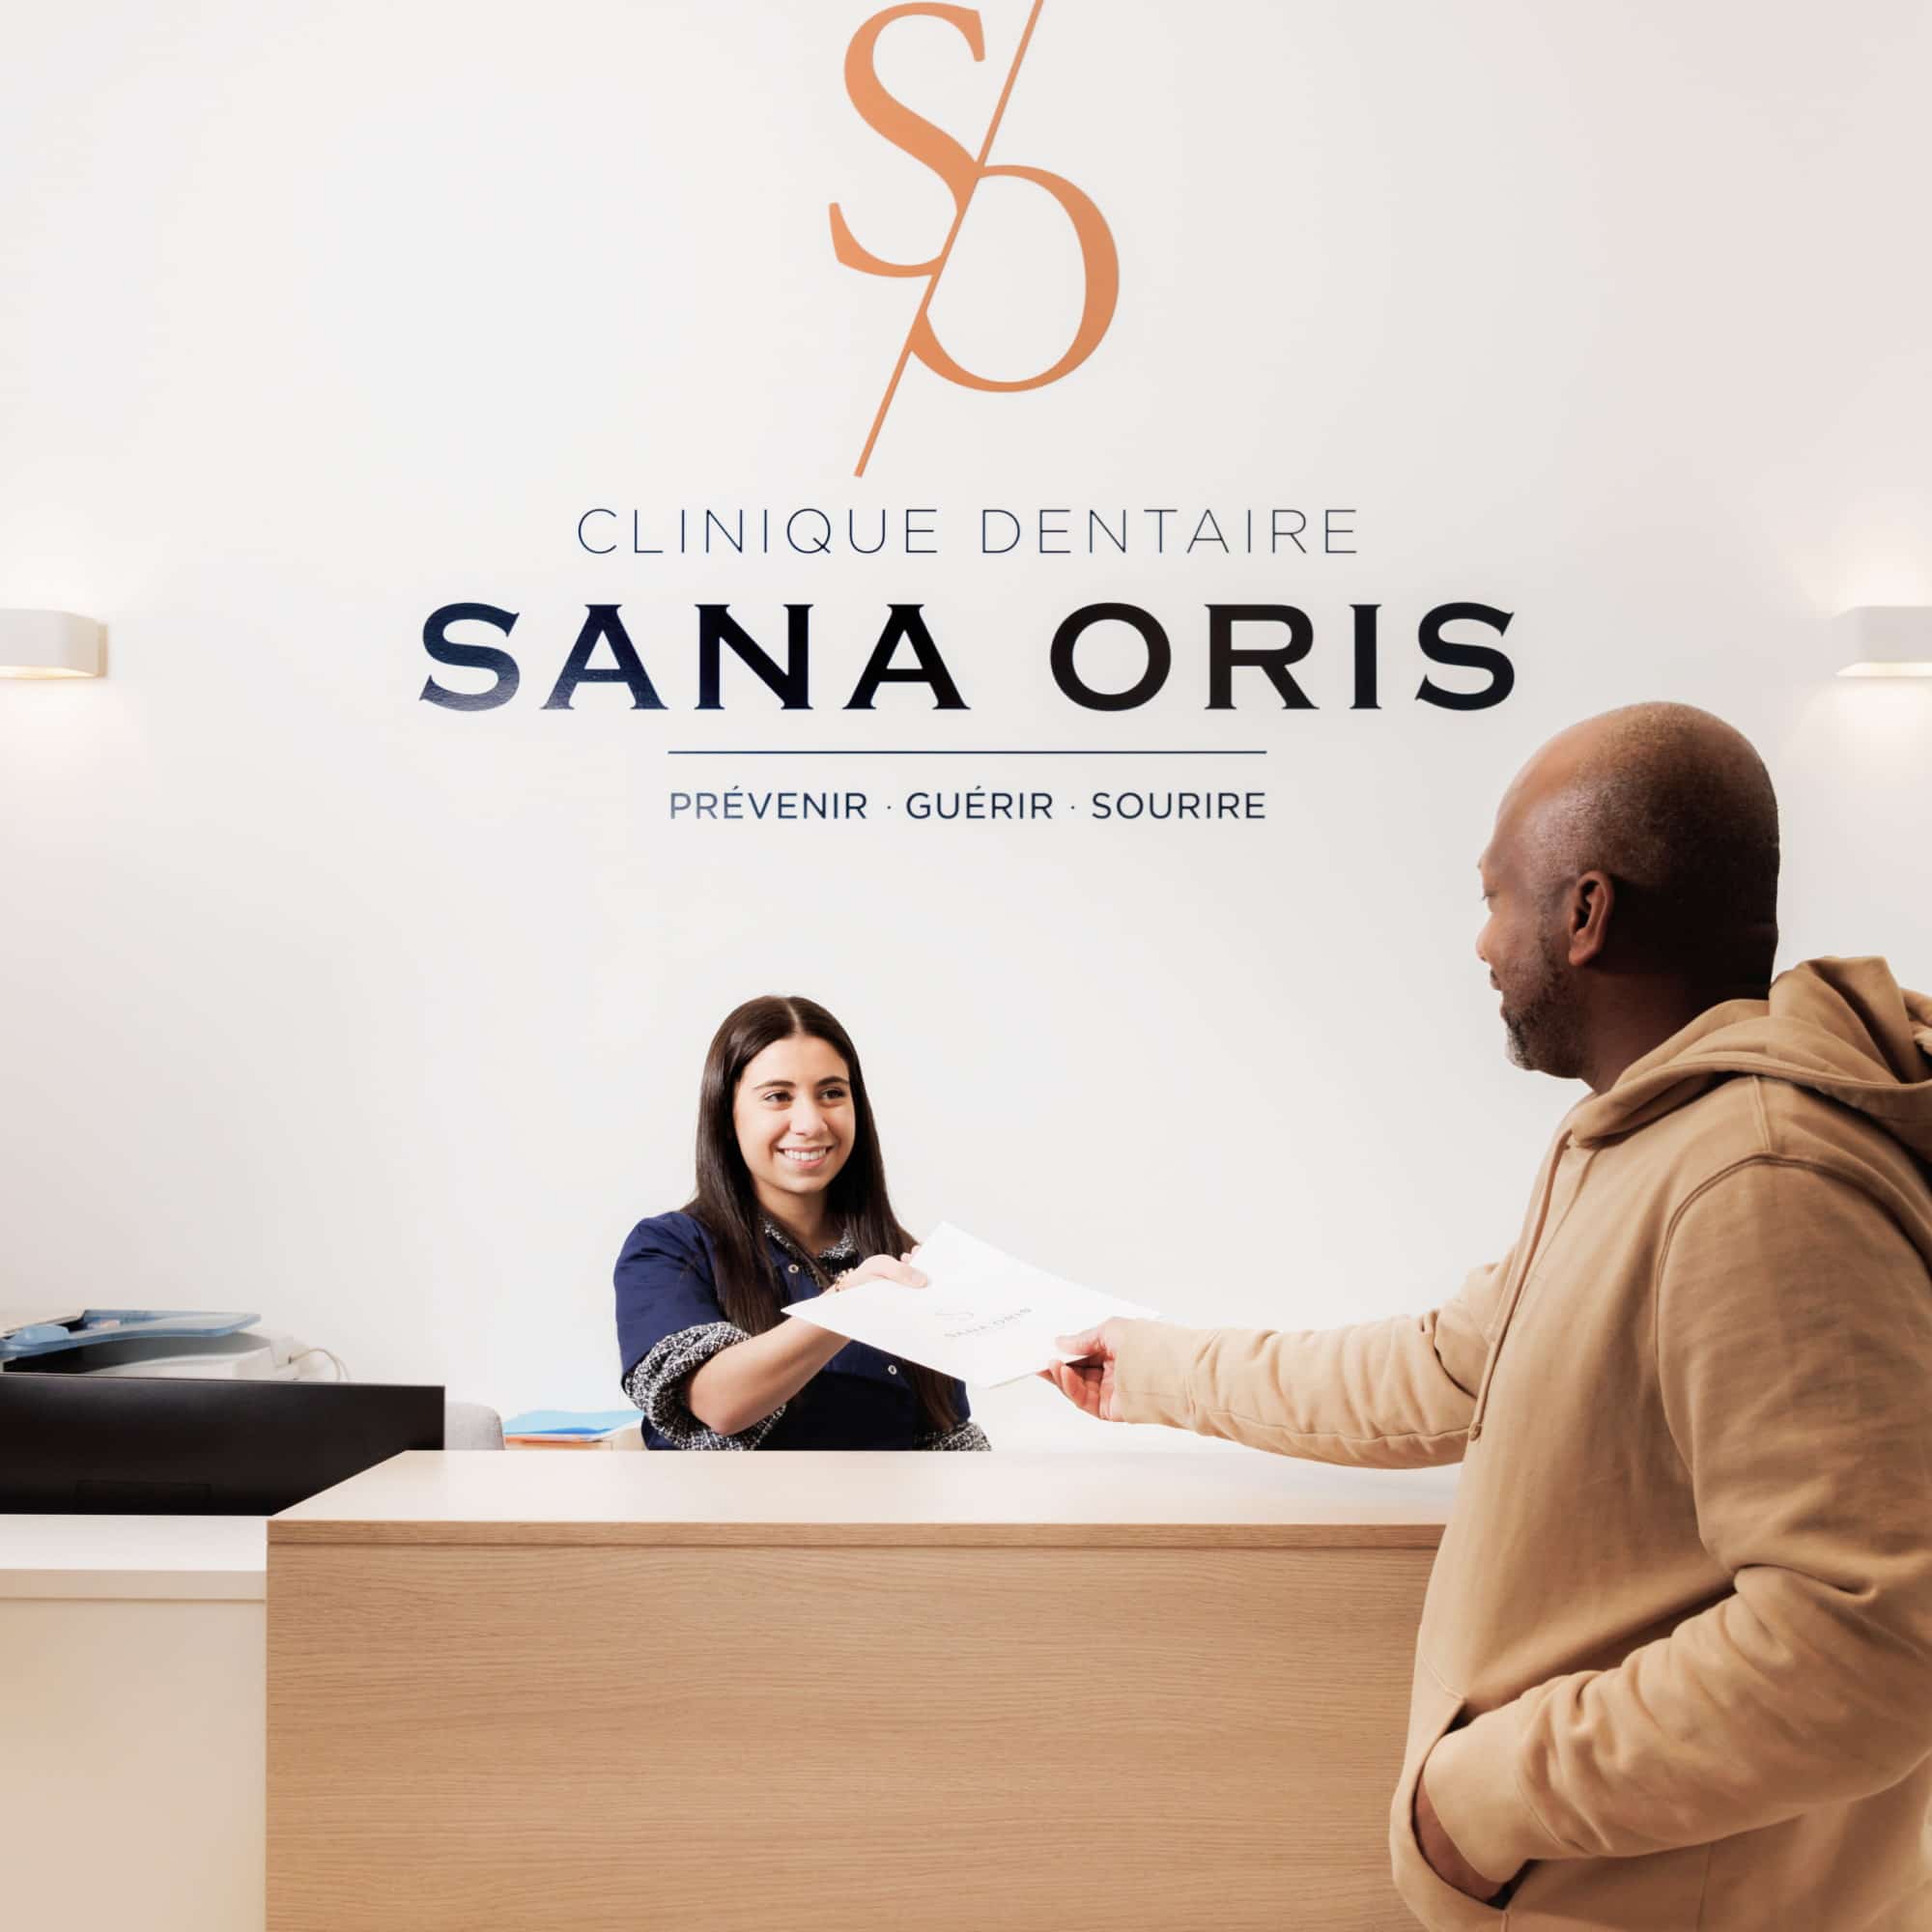 Patient care | Surgery, orthodontics and endodontics | Clinique dentaire Sana Oris Paris